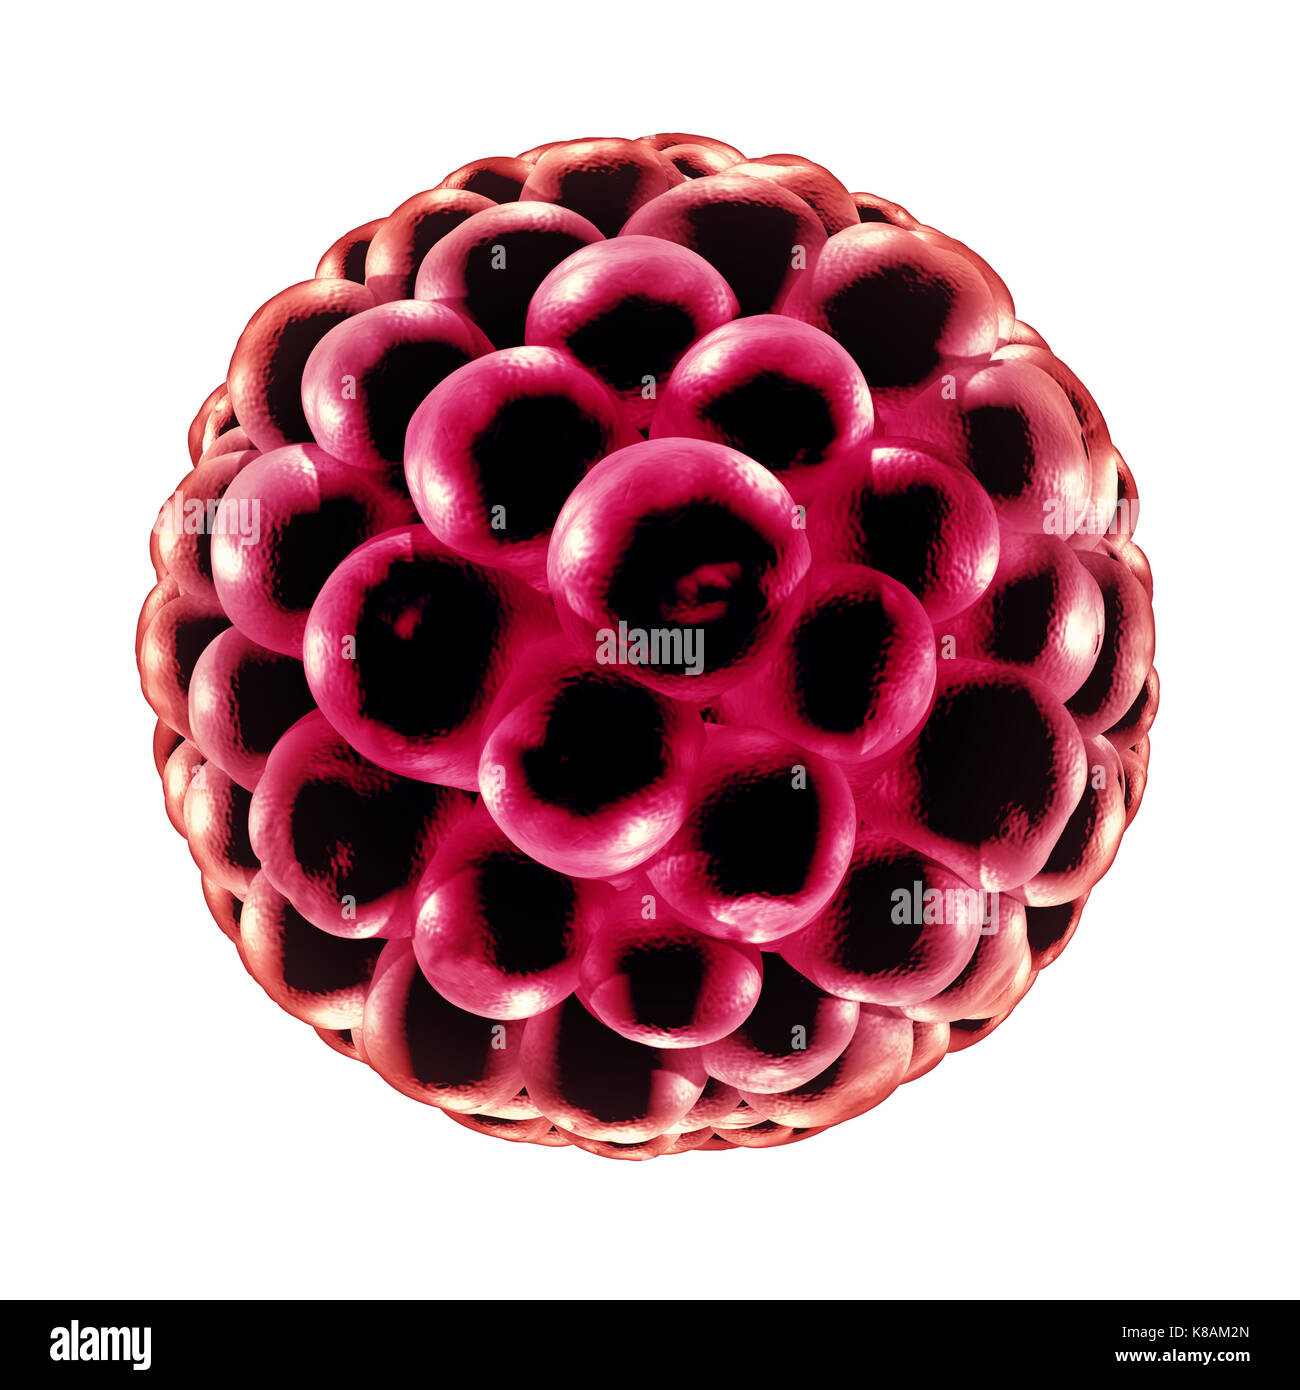 Blastozyste Düngung medizinisches Konzept als reproduktive Zellteilung Symbol in der Fortpflanzung als Anatomie Fruchtbarkeit Symbol in einer 3D-Darstellung. Stockfoto